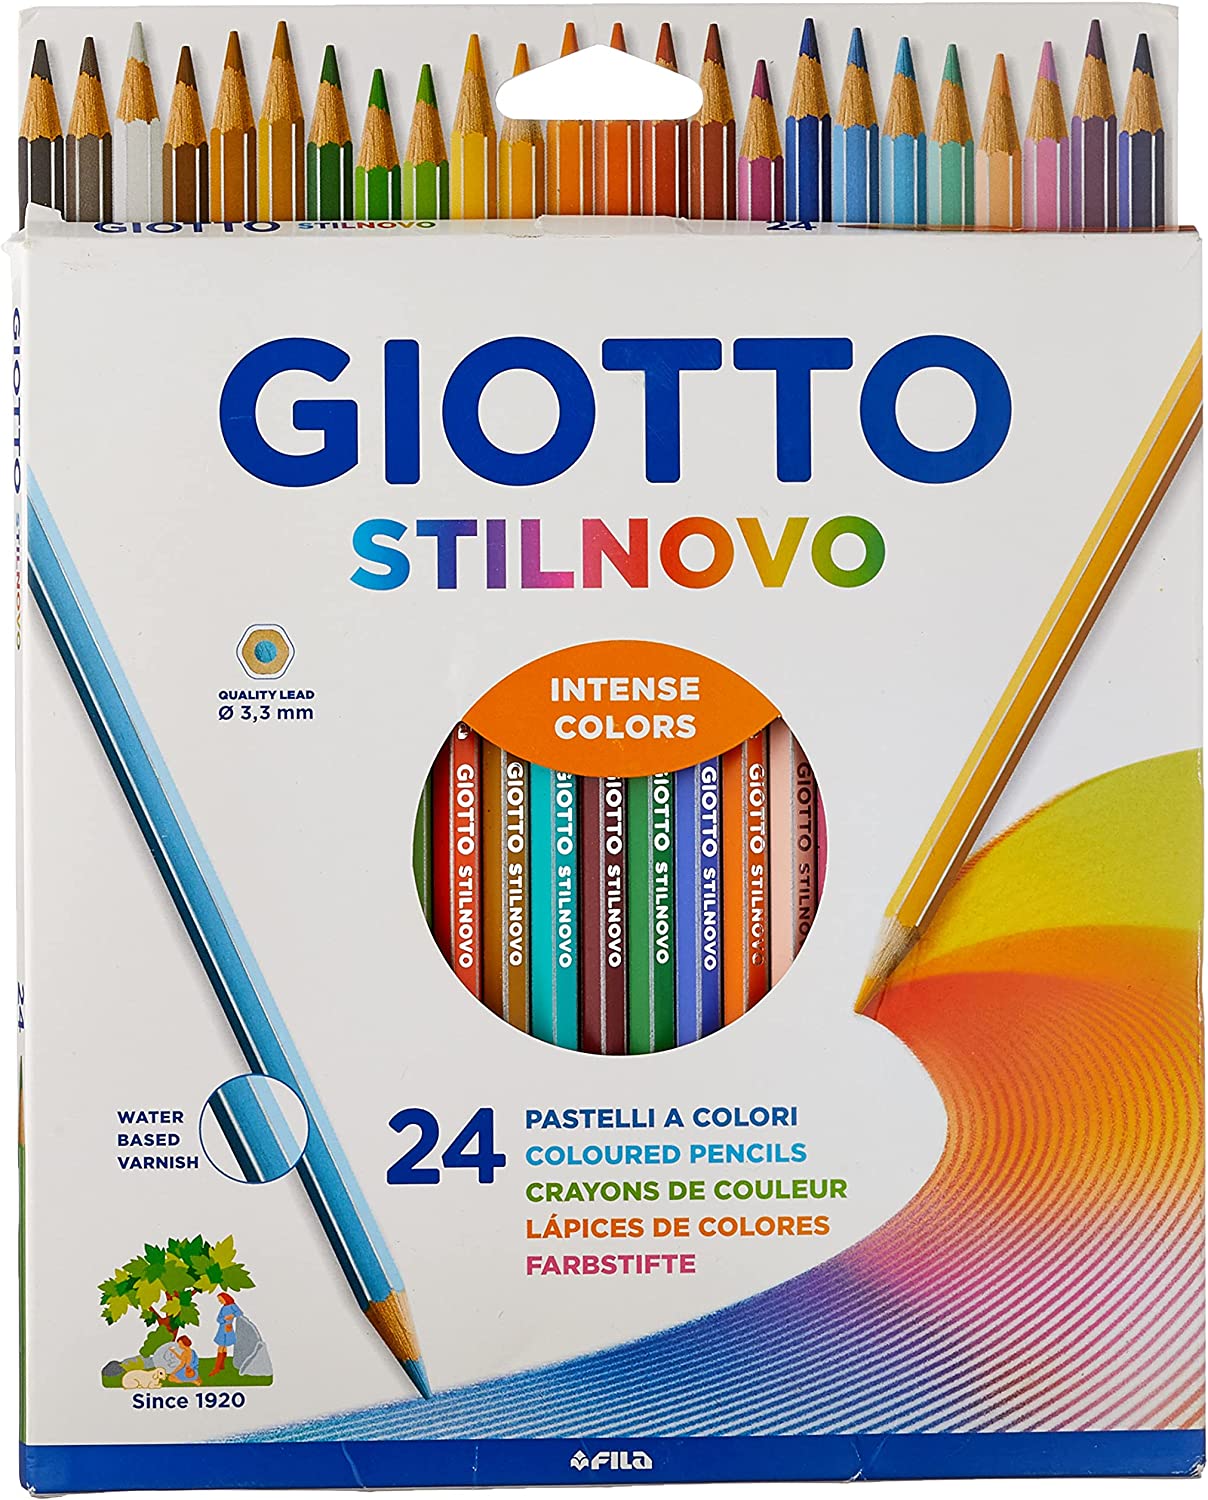 Giotto Stilnovo Astuccio Da 24 Matite A Pastello Colorate.